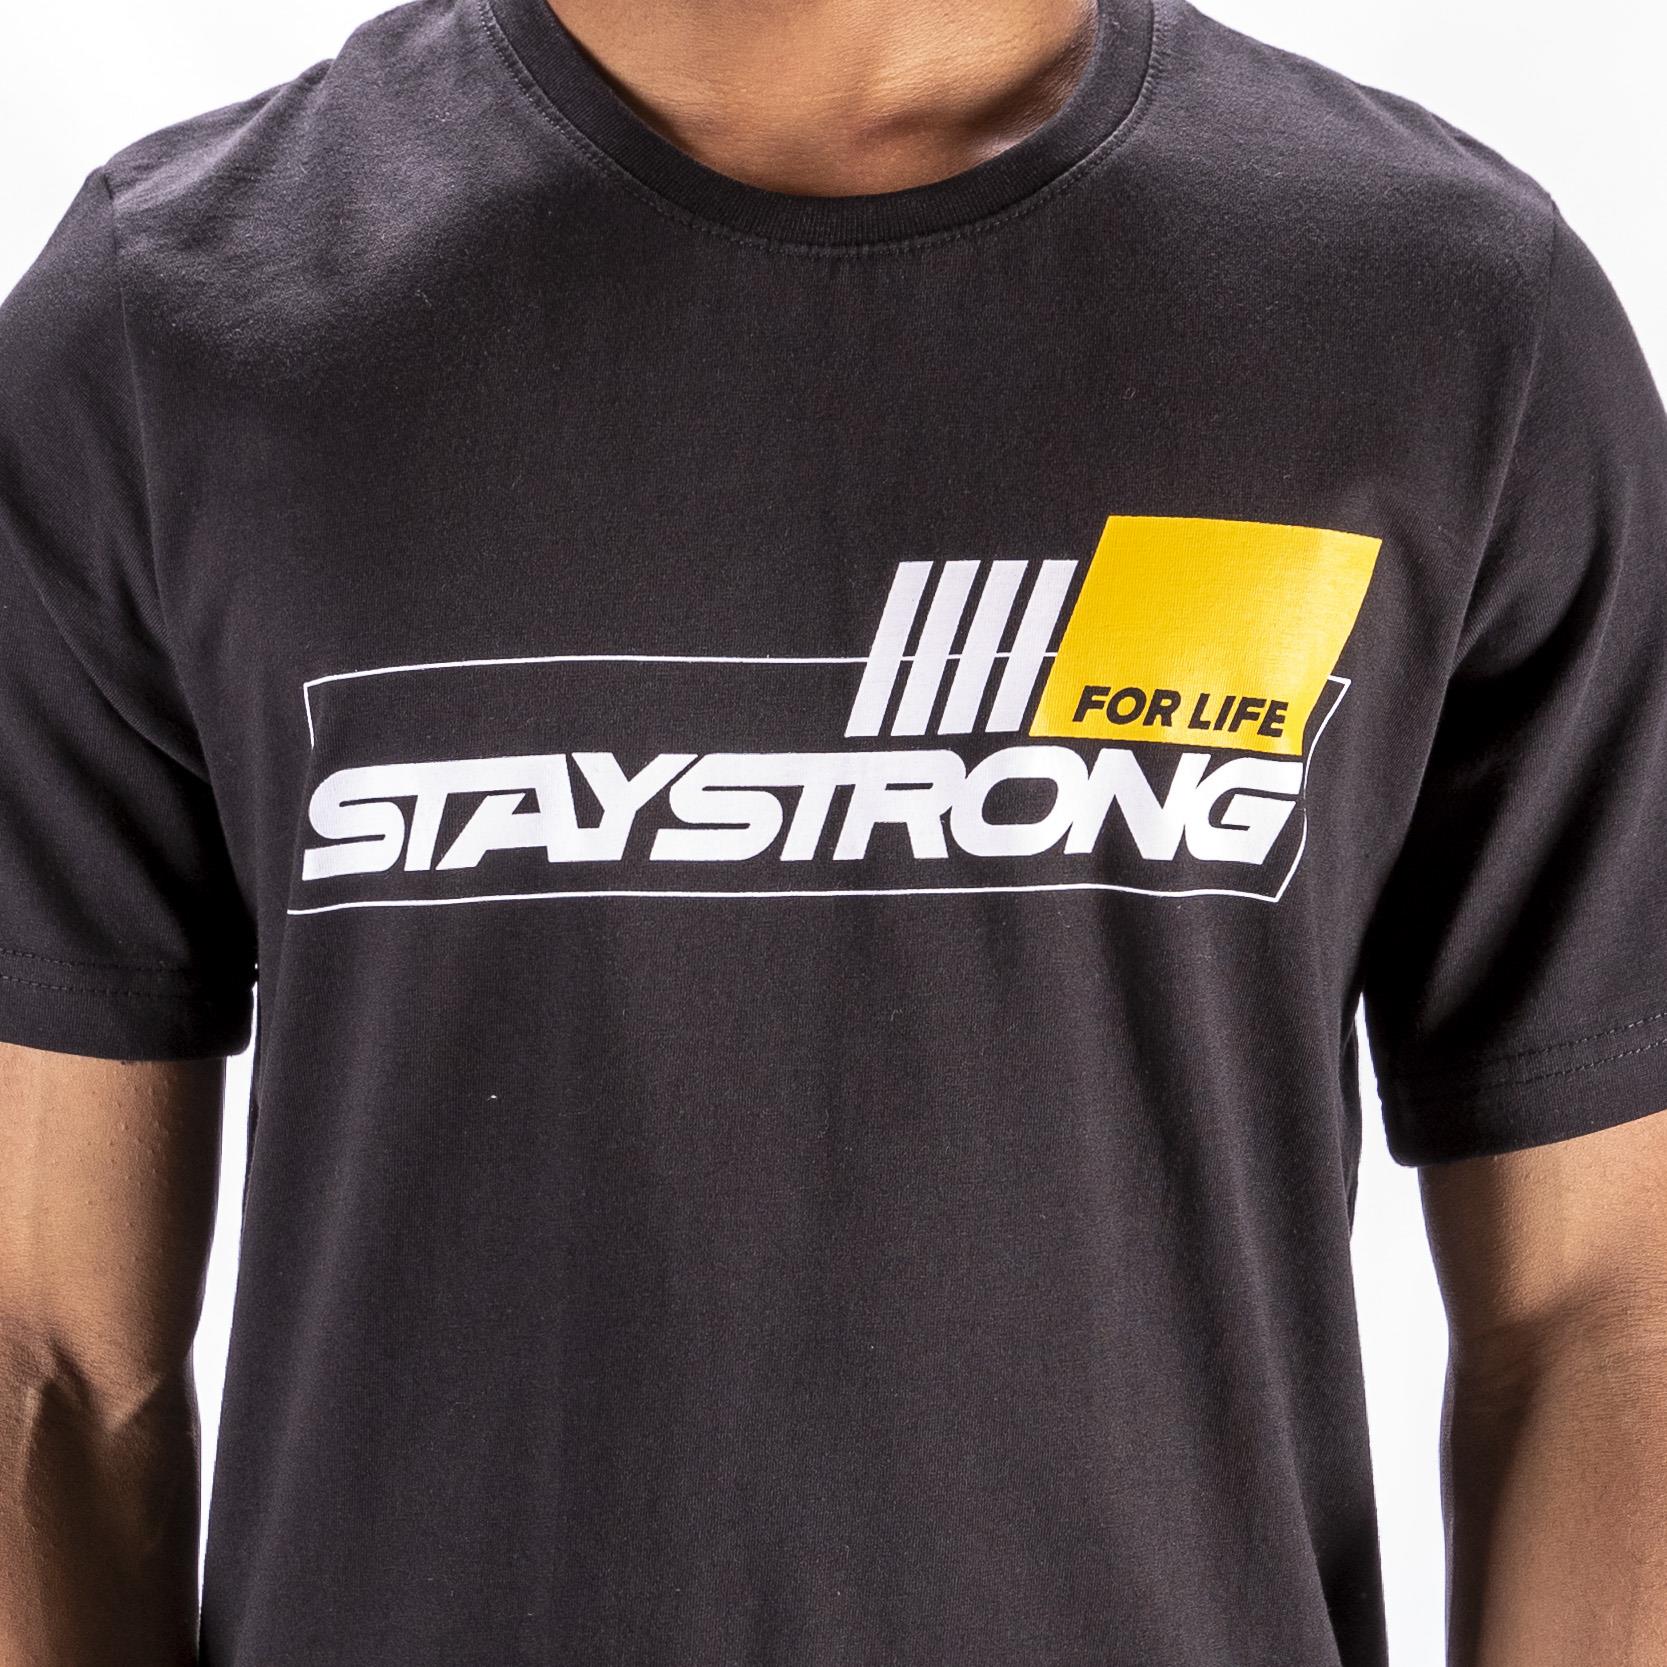 Stay Strong T-shirt pour la vie - Noir